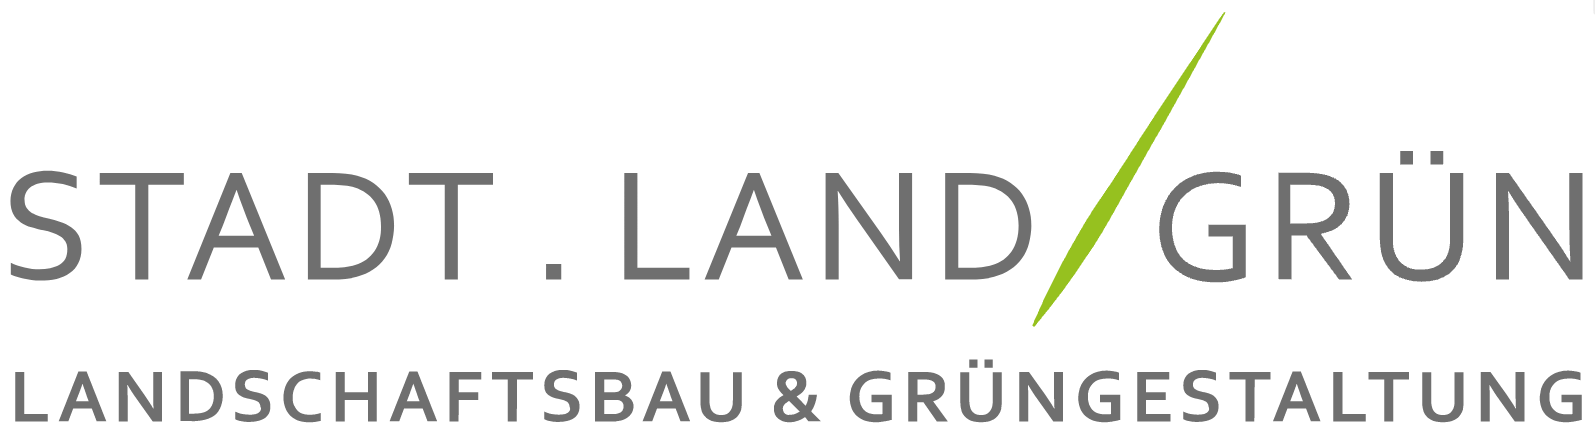 Logo Stadt . Land . Grün GmbH